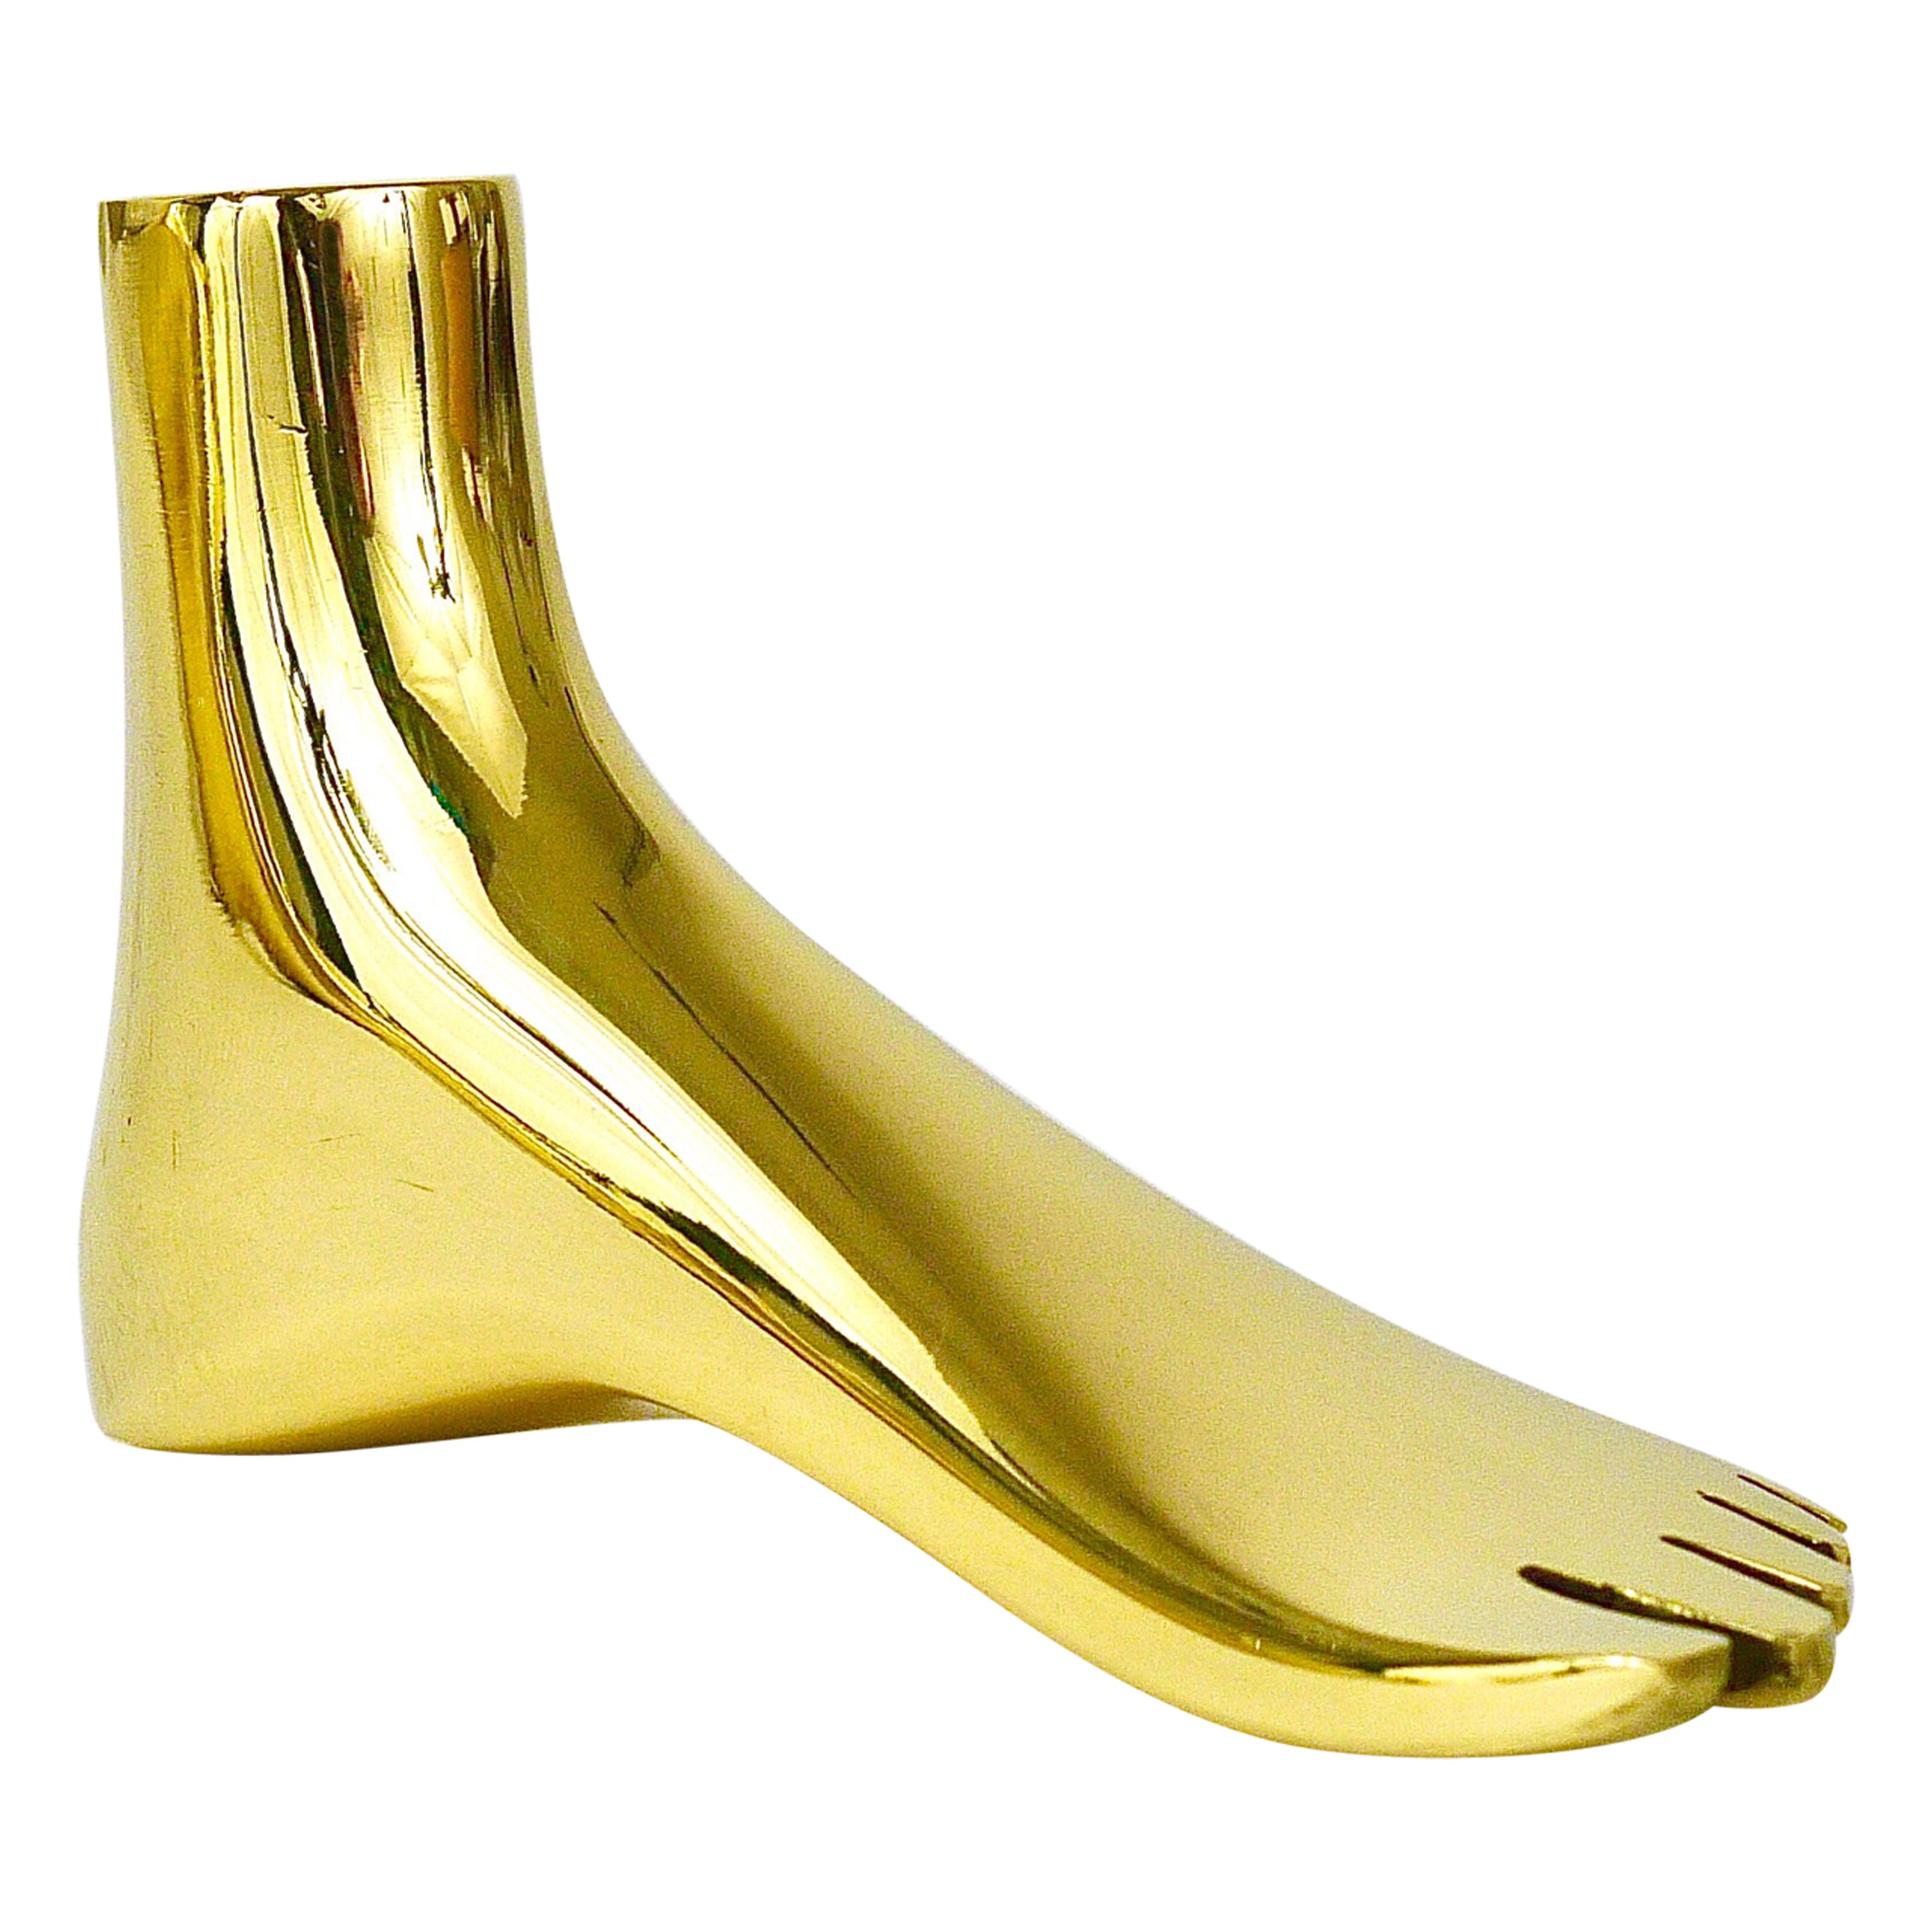 Signed Carl Auböck Midcentury Brass Foot Paperweight Handmade Sculpture